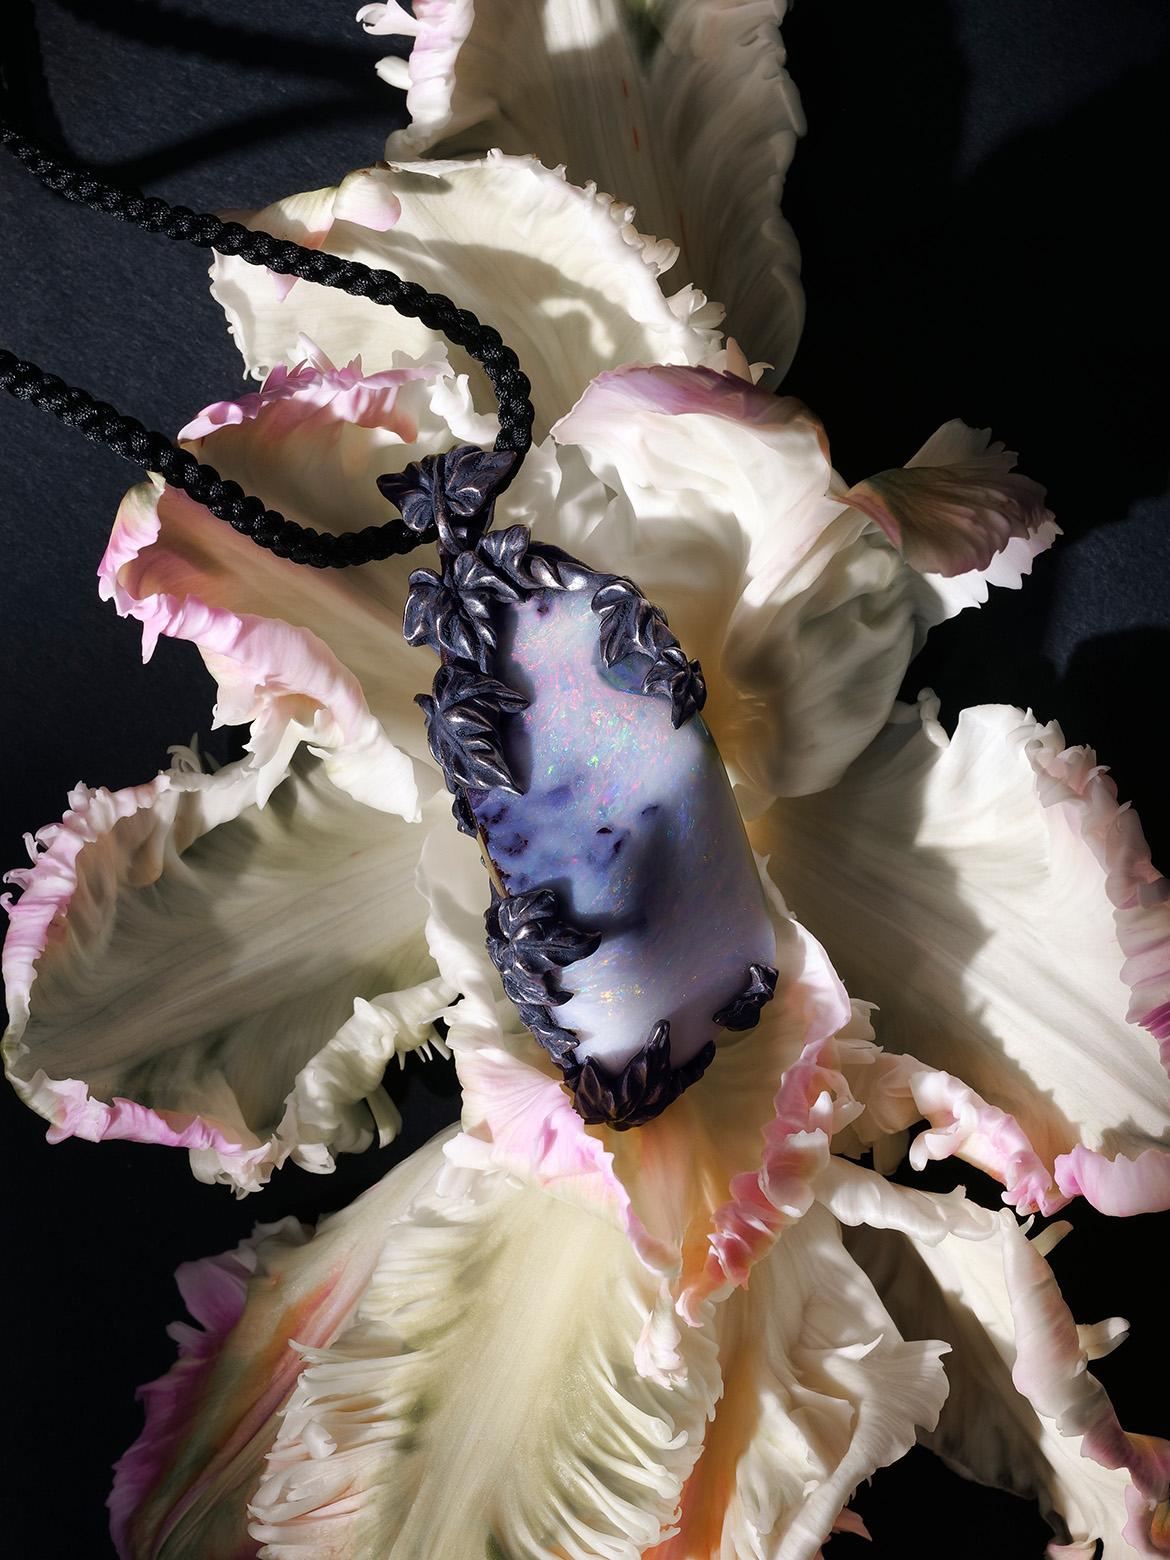 Pendentif lierre avec Opale de Boulder naturelle en argent patiné sur cordon noir 100% soie (fait main au Japon).
Origine de l'opale - Australie
poids de l'opale -  122 carats
Poids du pendentif - 58 grammes
hauteur du pendentif - 70 mm / 2.76